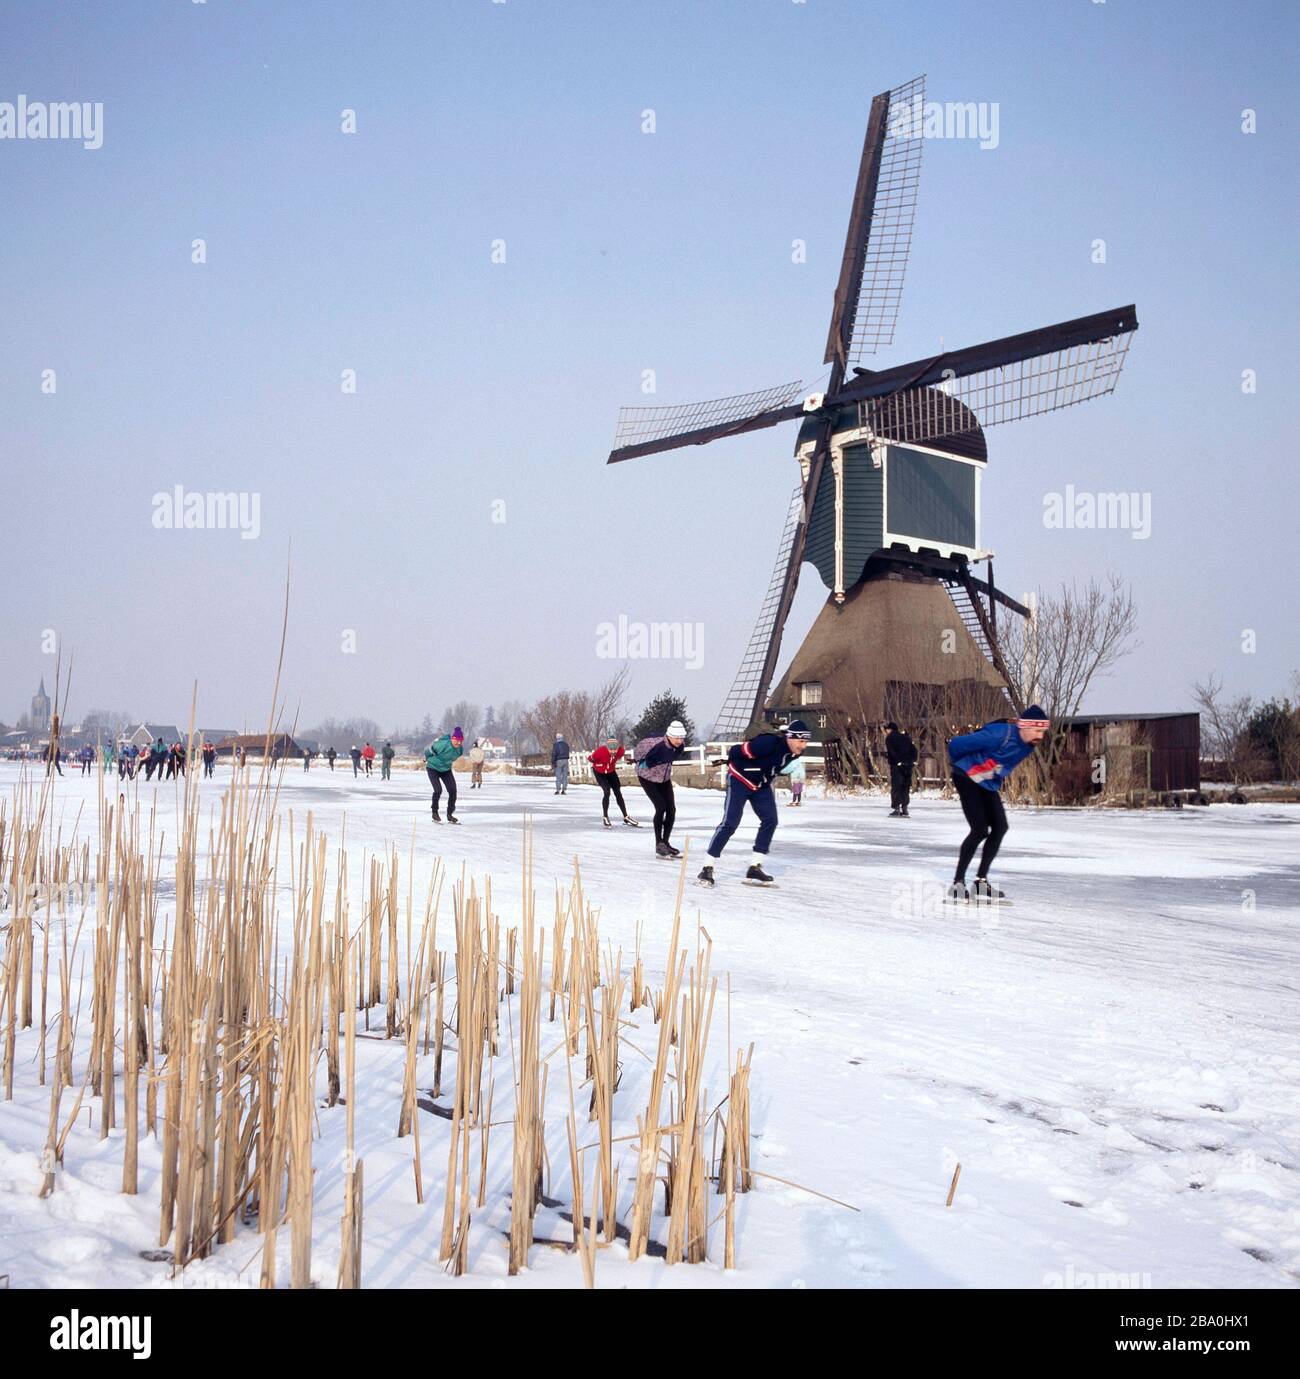 Rotte River, Pays-Bas-février 09,2012 : Moulin à vent et patineurs en hiver avec neige et glace aux Pays-Bas Banque D'Images